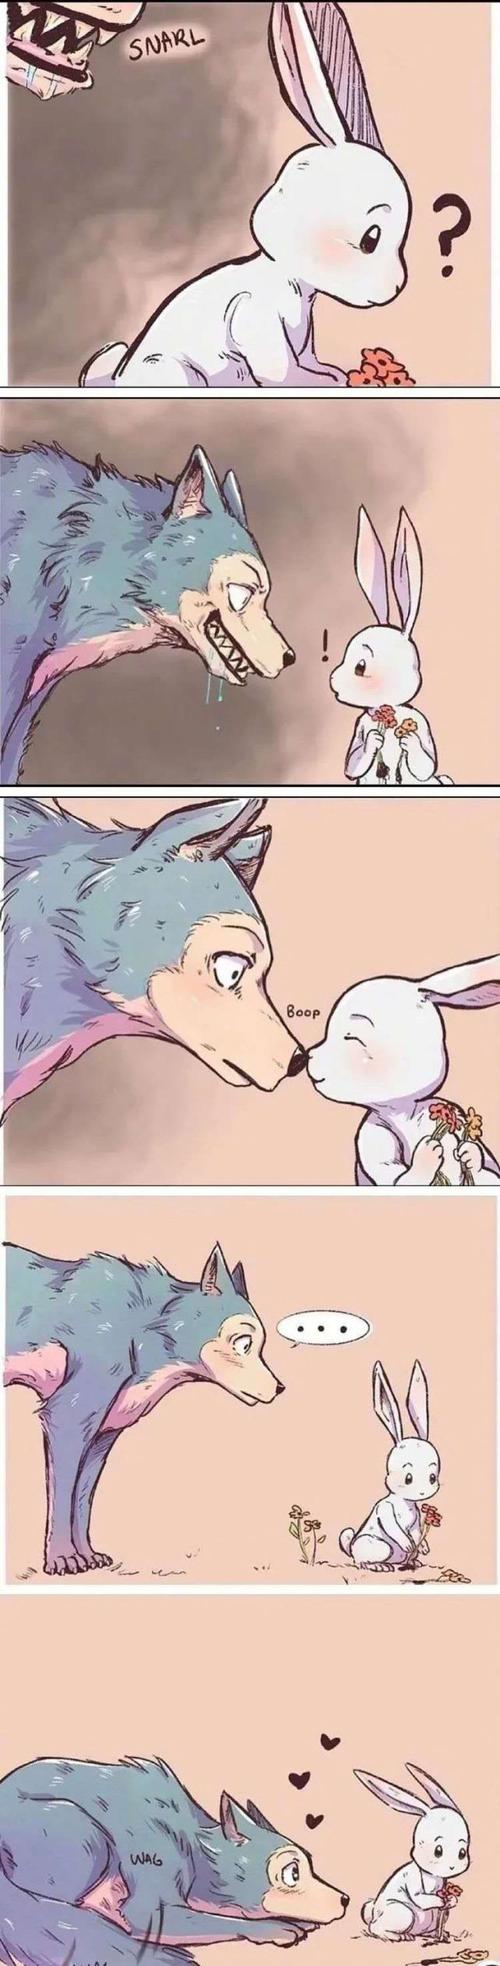 短篇漫画饿狼和兔子的爱情故事